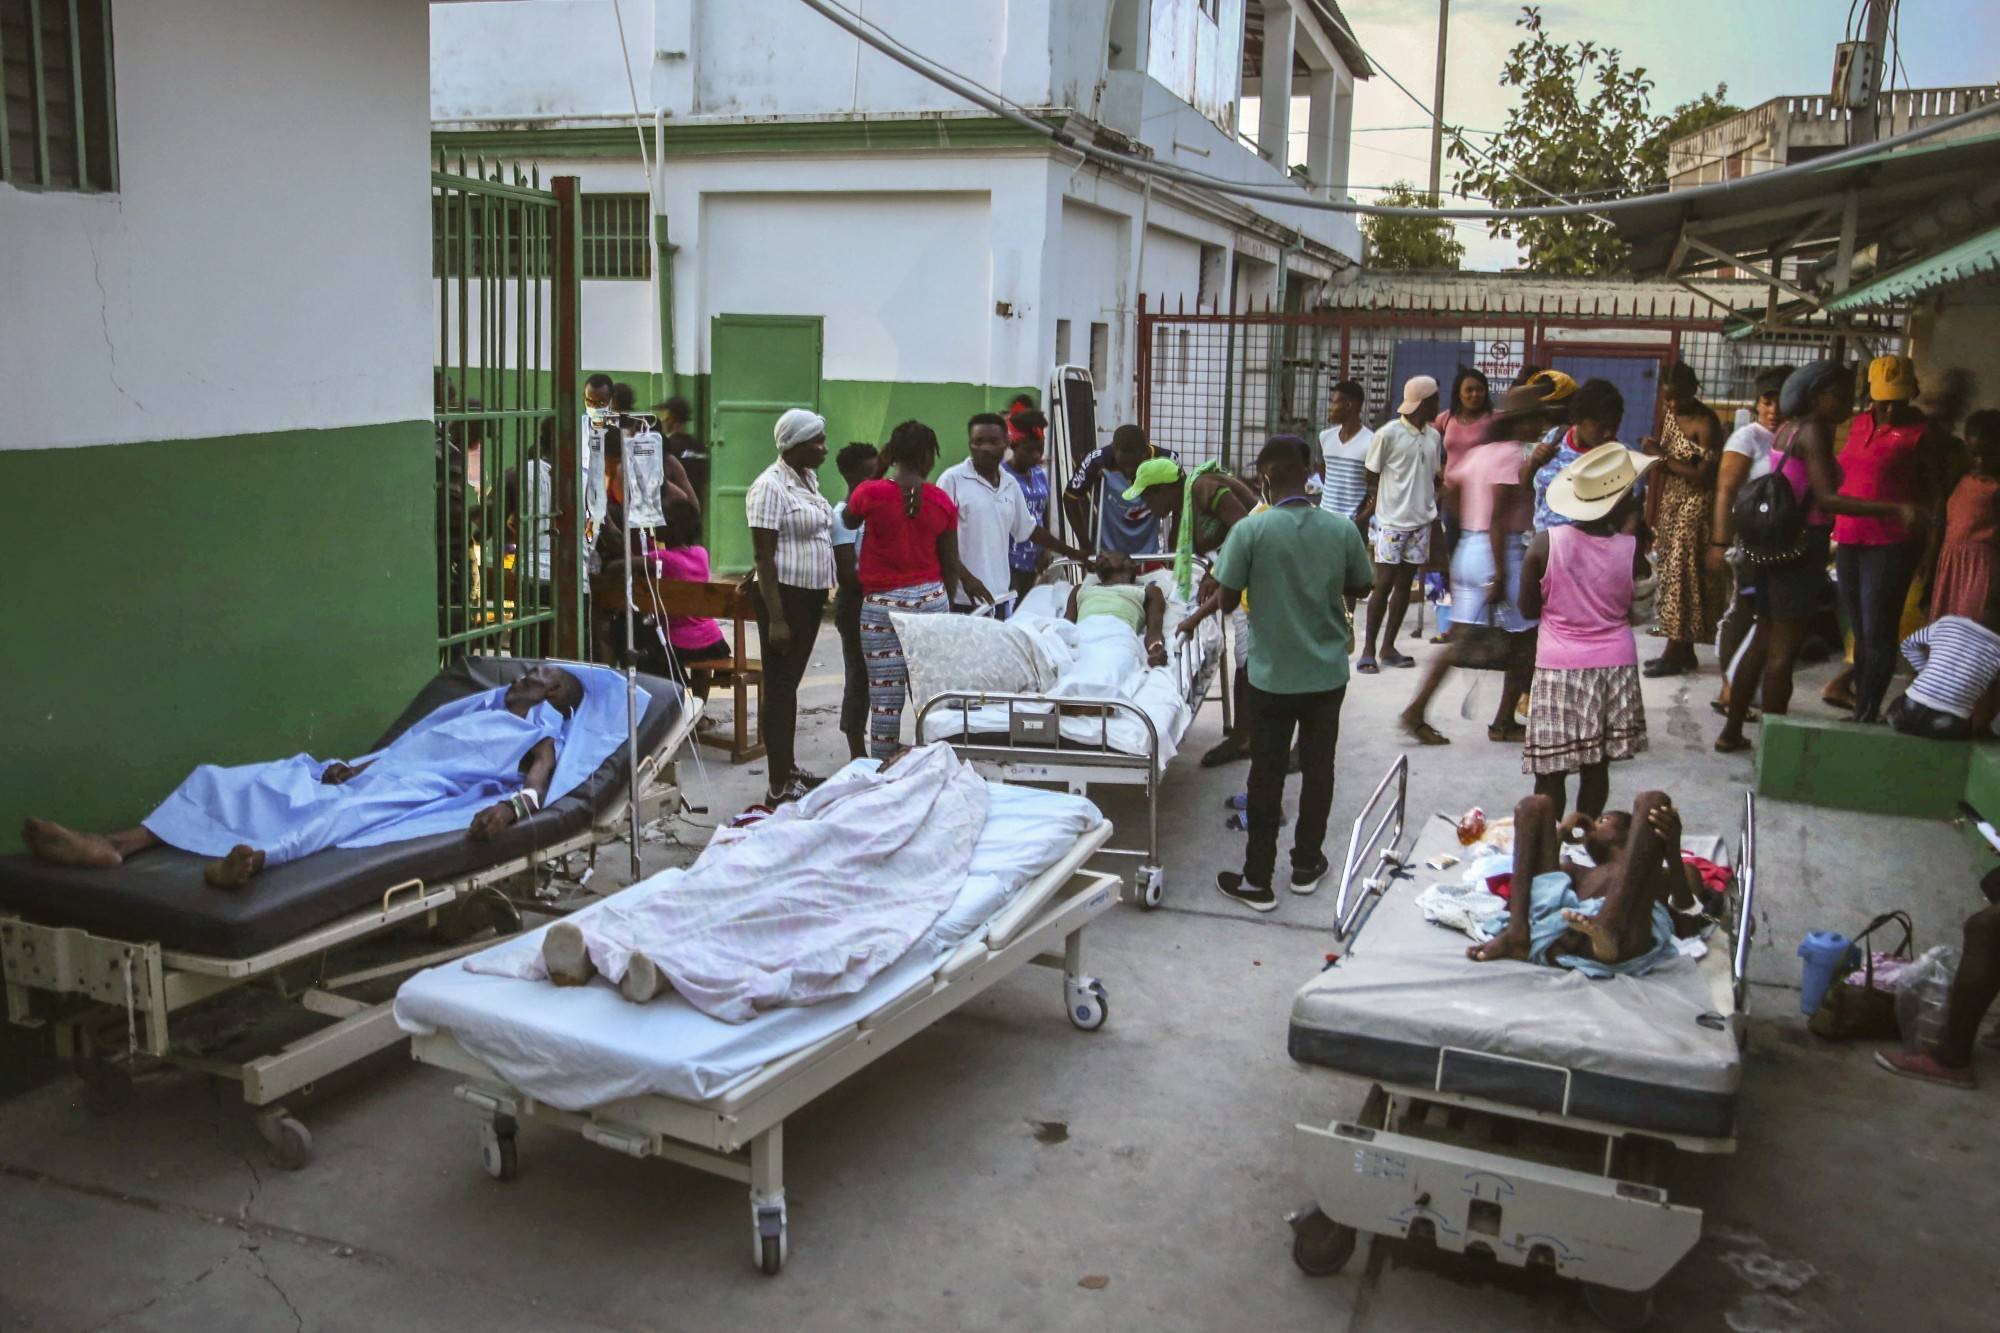  Haiti earthquake death toll rises to 2,207